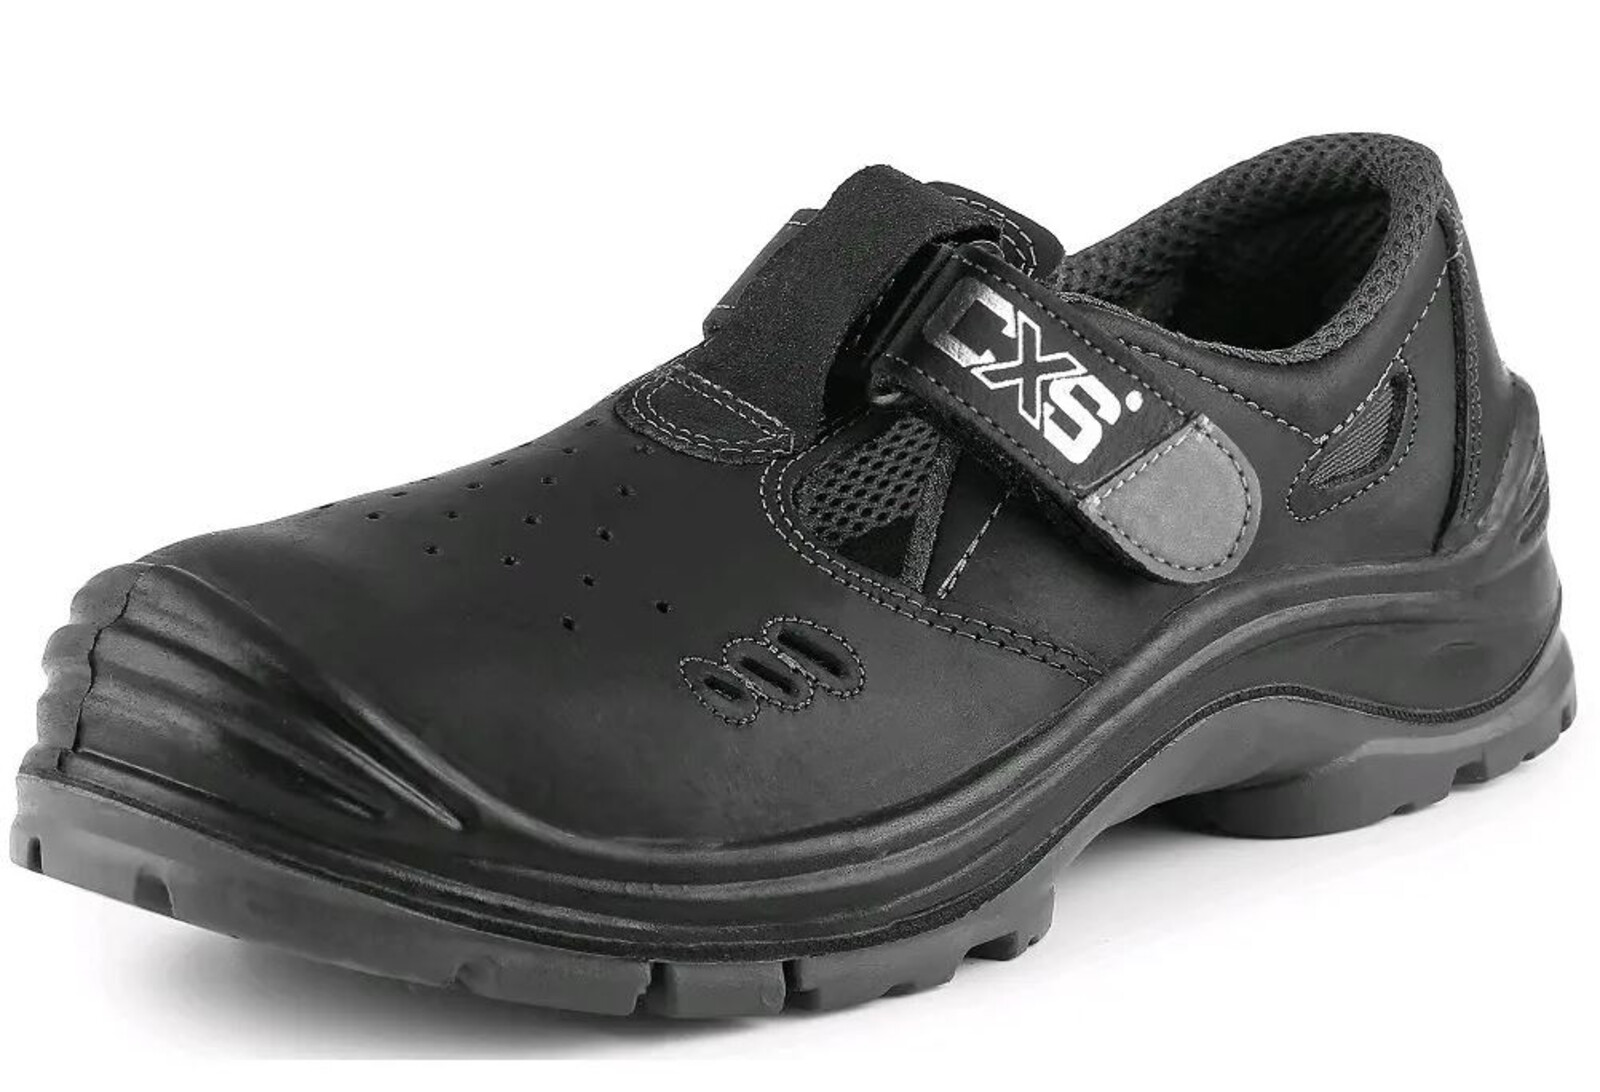 Bezpečnostné sandále CXS Safety Steel Iron S1 - veľkosť: 43, farba: čierna